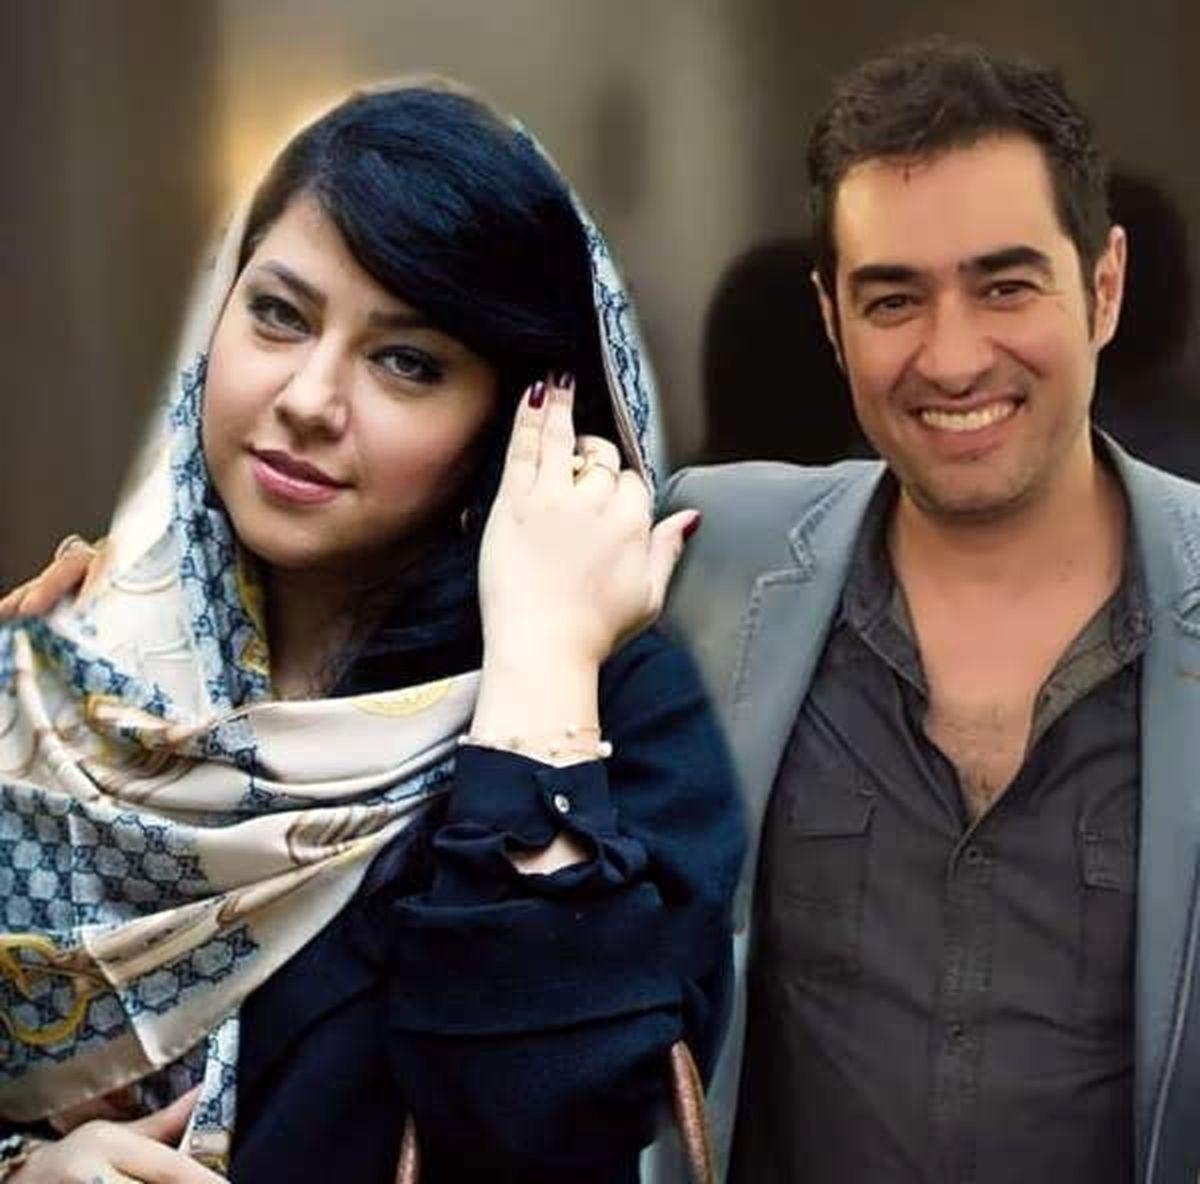 حواشی طلاق شهاب حسینی از همسرش حقیقت دارد!؟